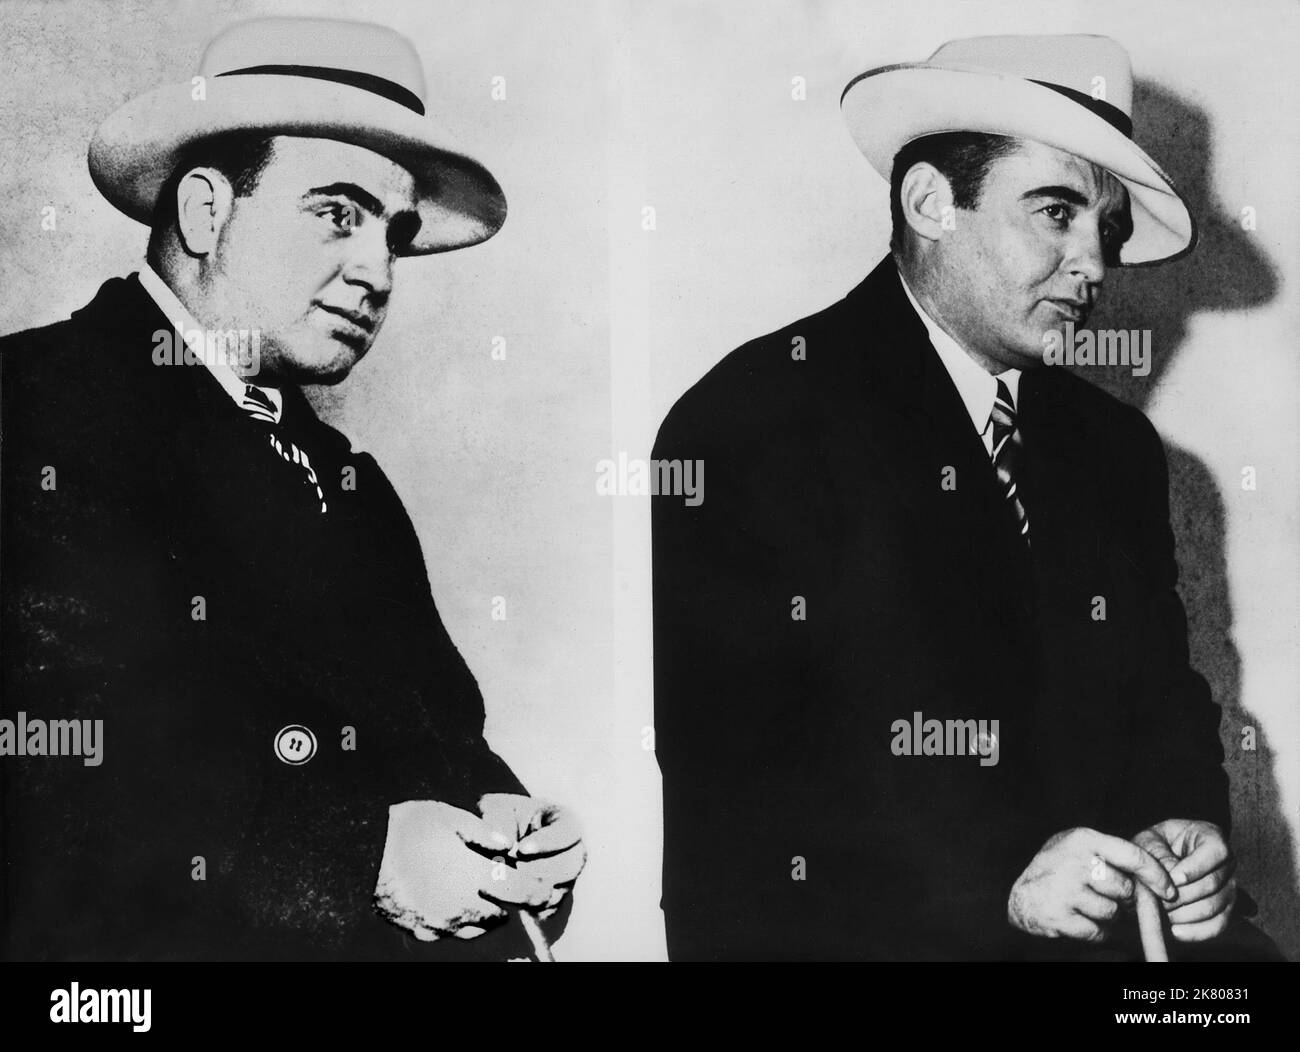 Al Capone & Rod Steiger Film: Al Capone (USA 1959) Charaktere: Al Capone & Al Capone Regie: Richard Wilson, 25. März 1959 **WARNUNG** Dieses Foto ist nur für redaktionelle Zwecke bestimmt und unterliegt dem Copyright von ALLIIERTEN KÜNSTLERN und/oder dem von der Film- oder Produktionsgesellschaft beauftragten Fotografen.Es kann nur von Publikationen im Zusammenhang mit der Bewerbung des oben genannten Films reproduziert werden. Eine obligatorische Gutschrift für ALLIIERTE KÜNSTLER ist erforderlich. Der Fotograf sollte auch bei Bekanntwerden des Fotos gutgeschrieben werden. Ohne schriftliche Genehmigung der Film Company kann keine kommerzielle Nutzung gewährt werden. Stockfoto